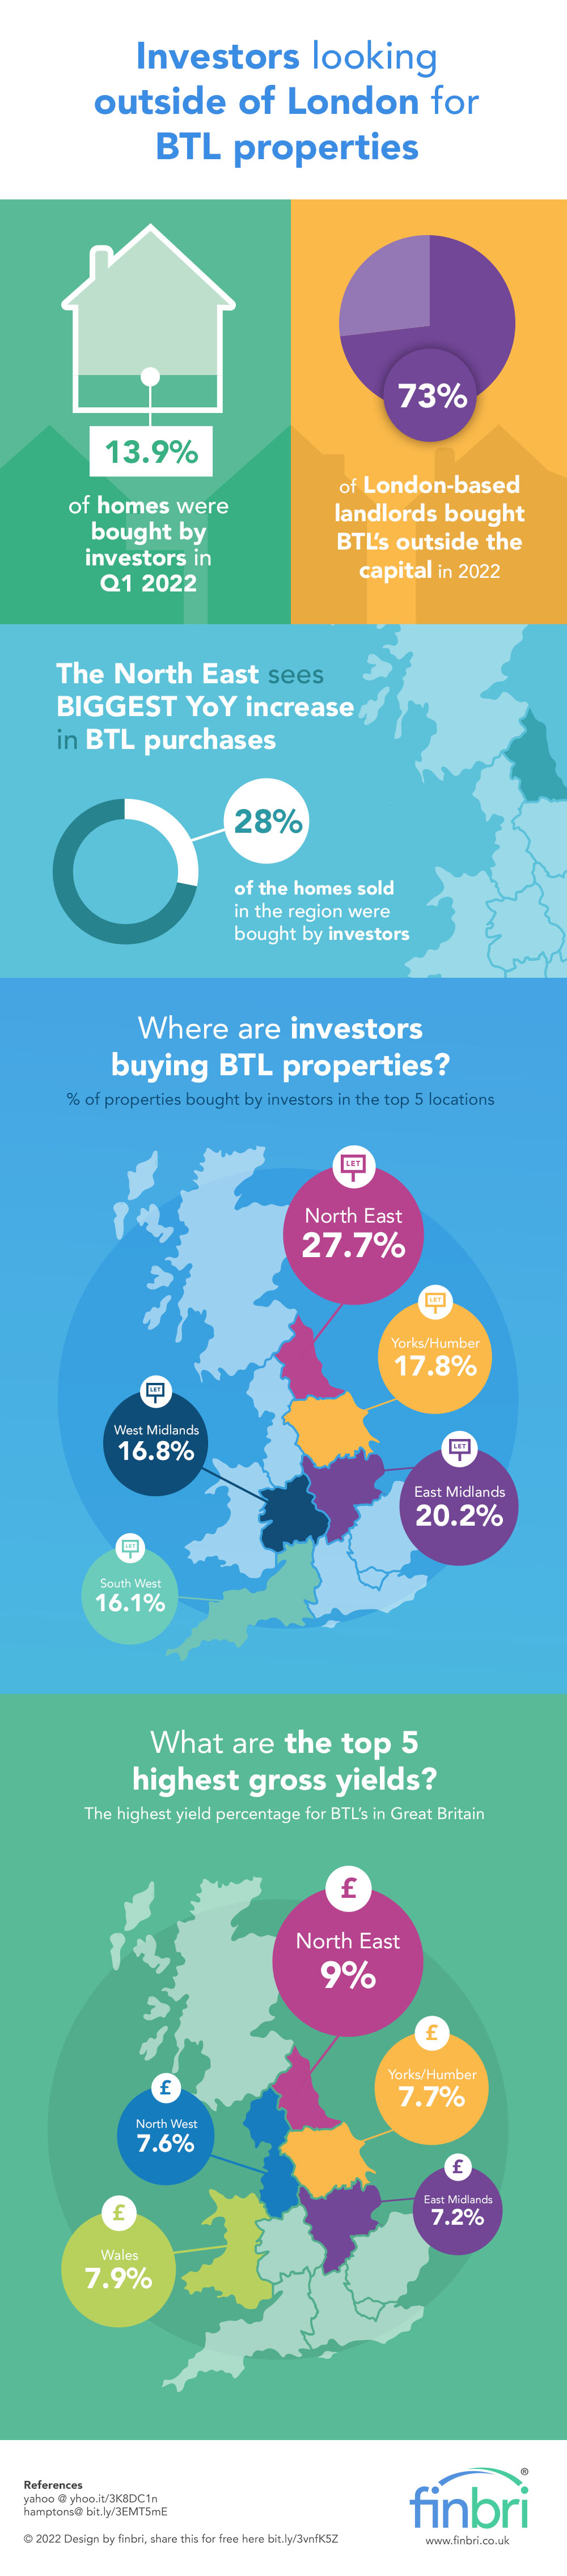 Investors looking outside of London for BTL properties